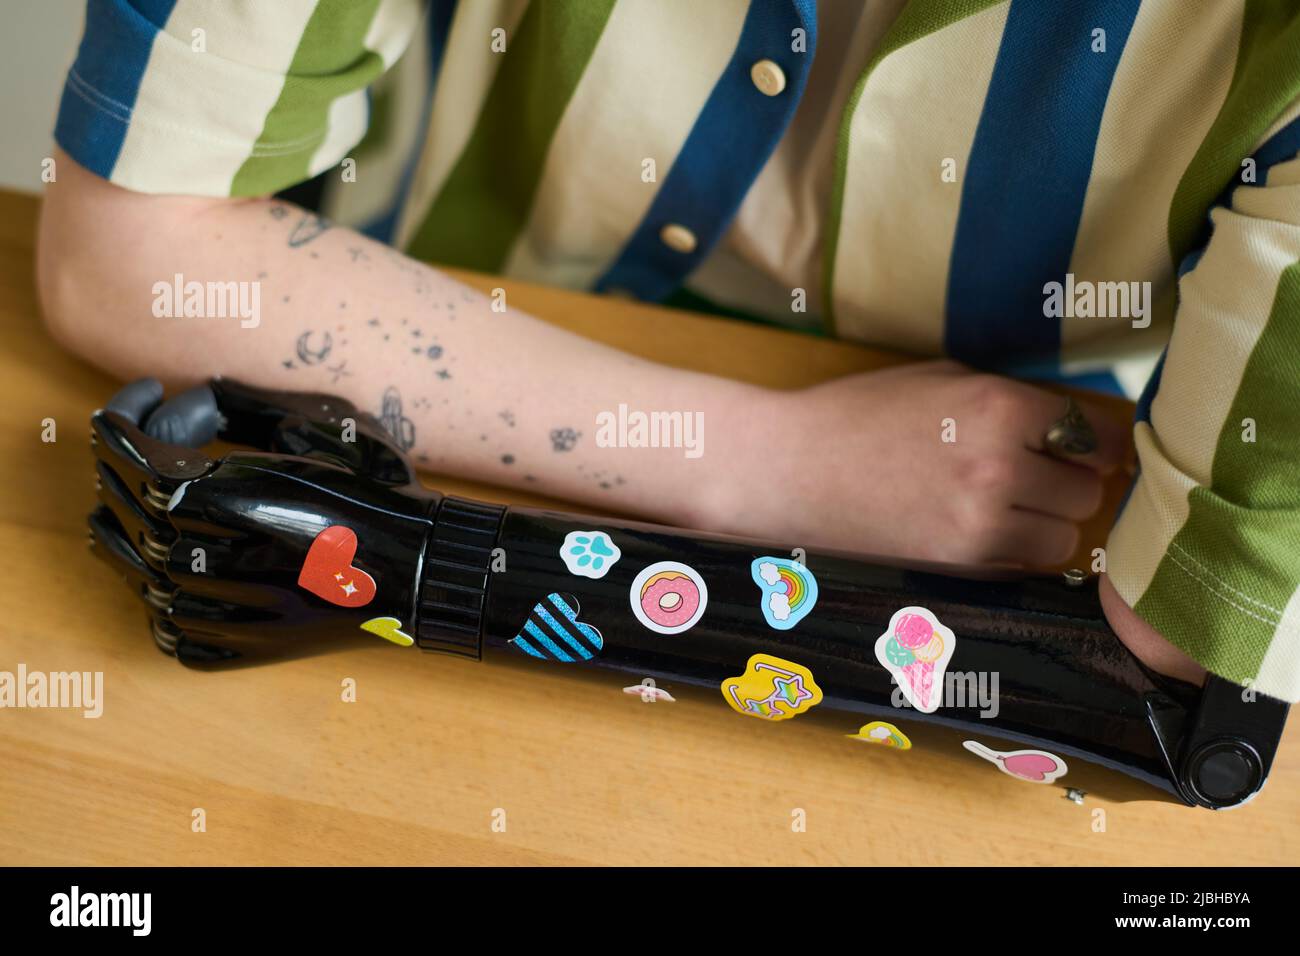 Nahaufnahme der Arme einer jungen Frau mit körperlichen Beeinträchtigungen, deren myoelektrische Prothese mit handgefertigten Stickern verziert wurde Stockfoto